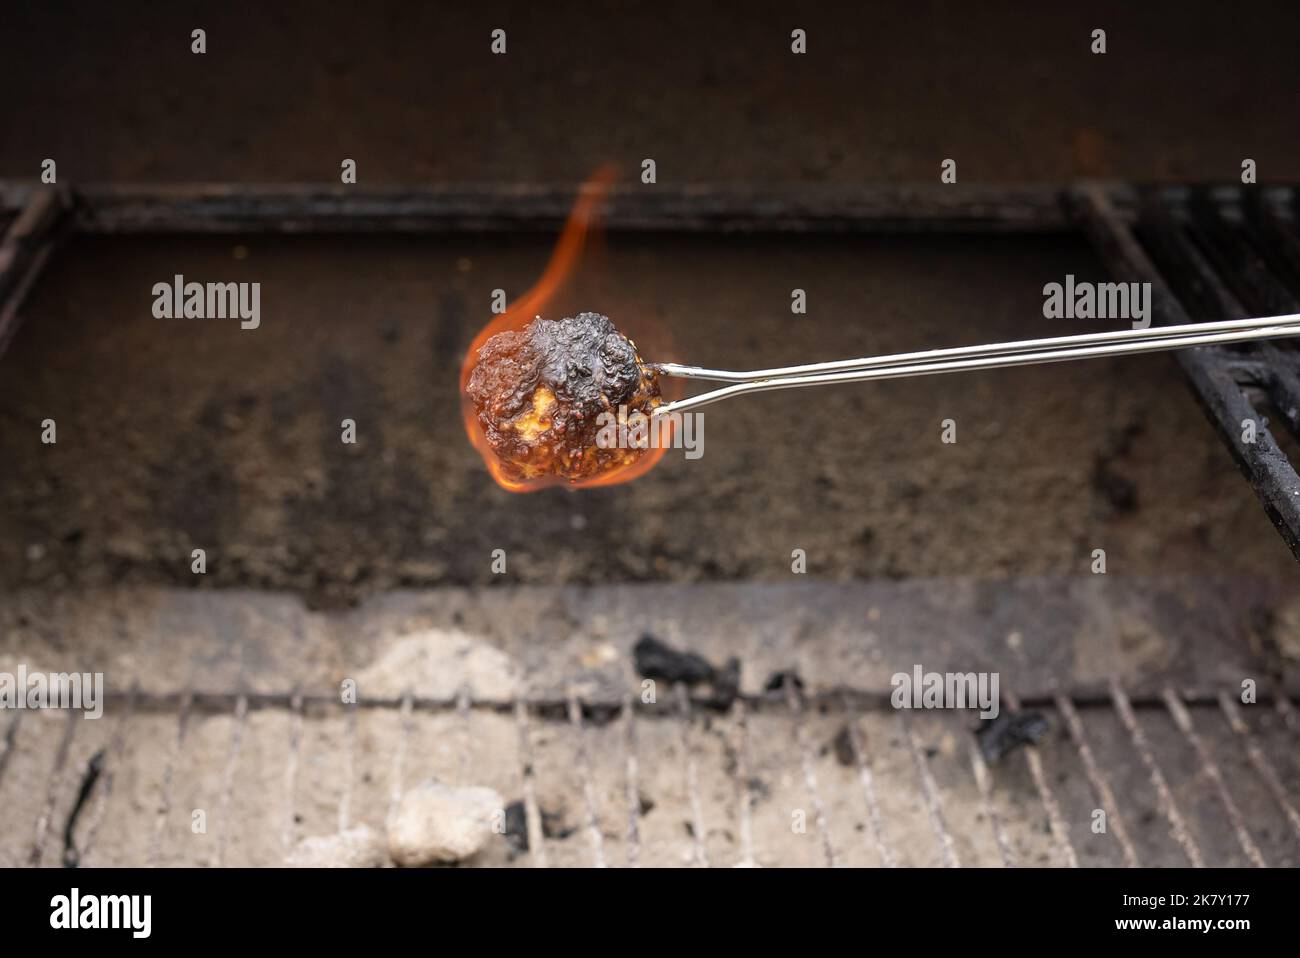 Roasted marshmallow burning on skewer Stock Photo